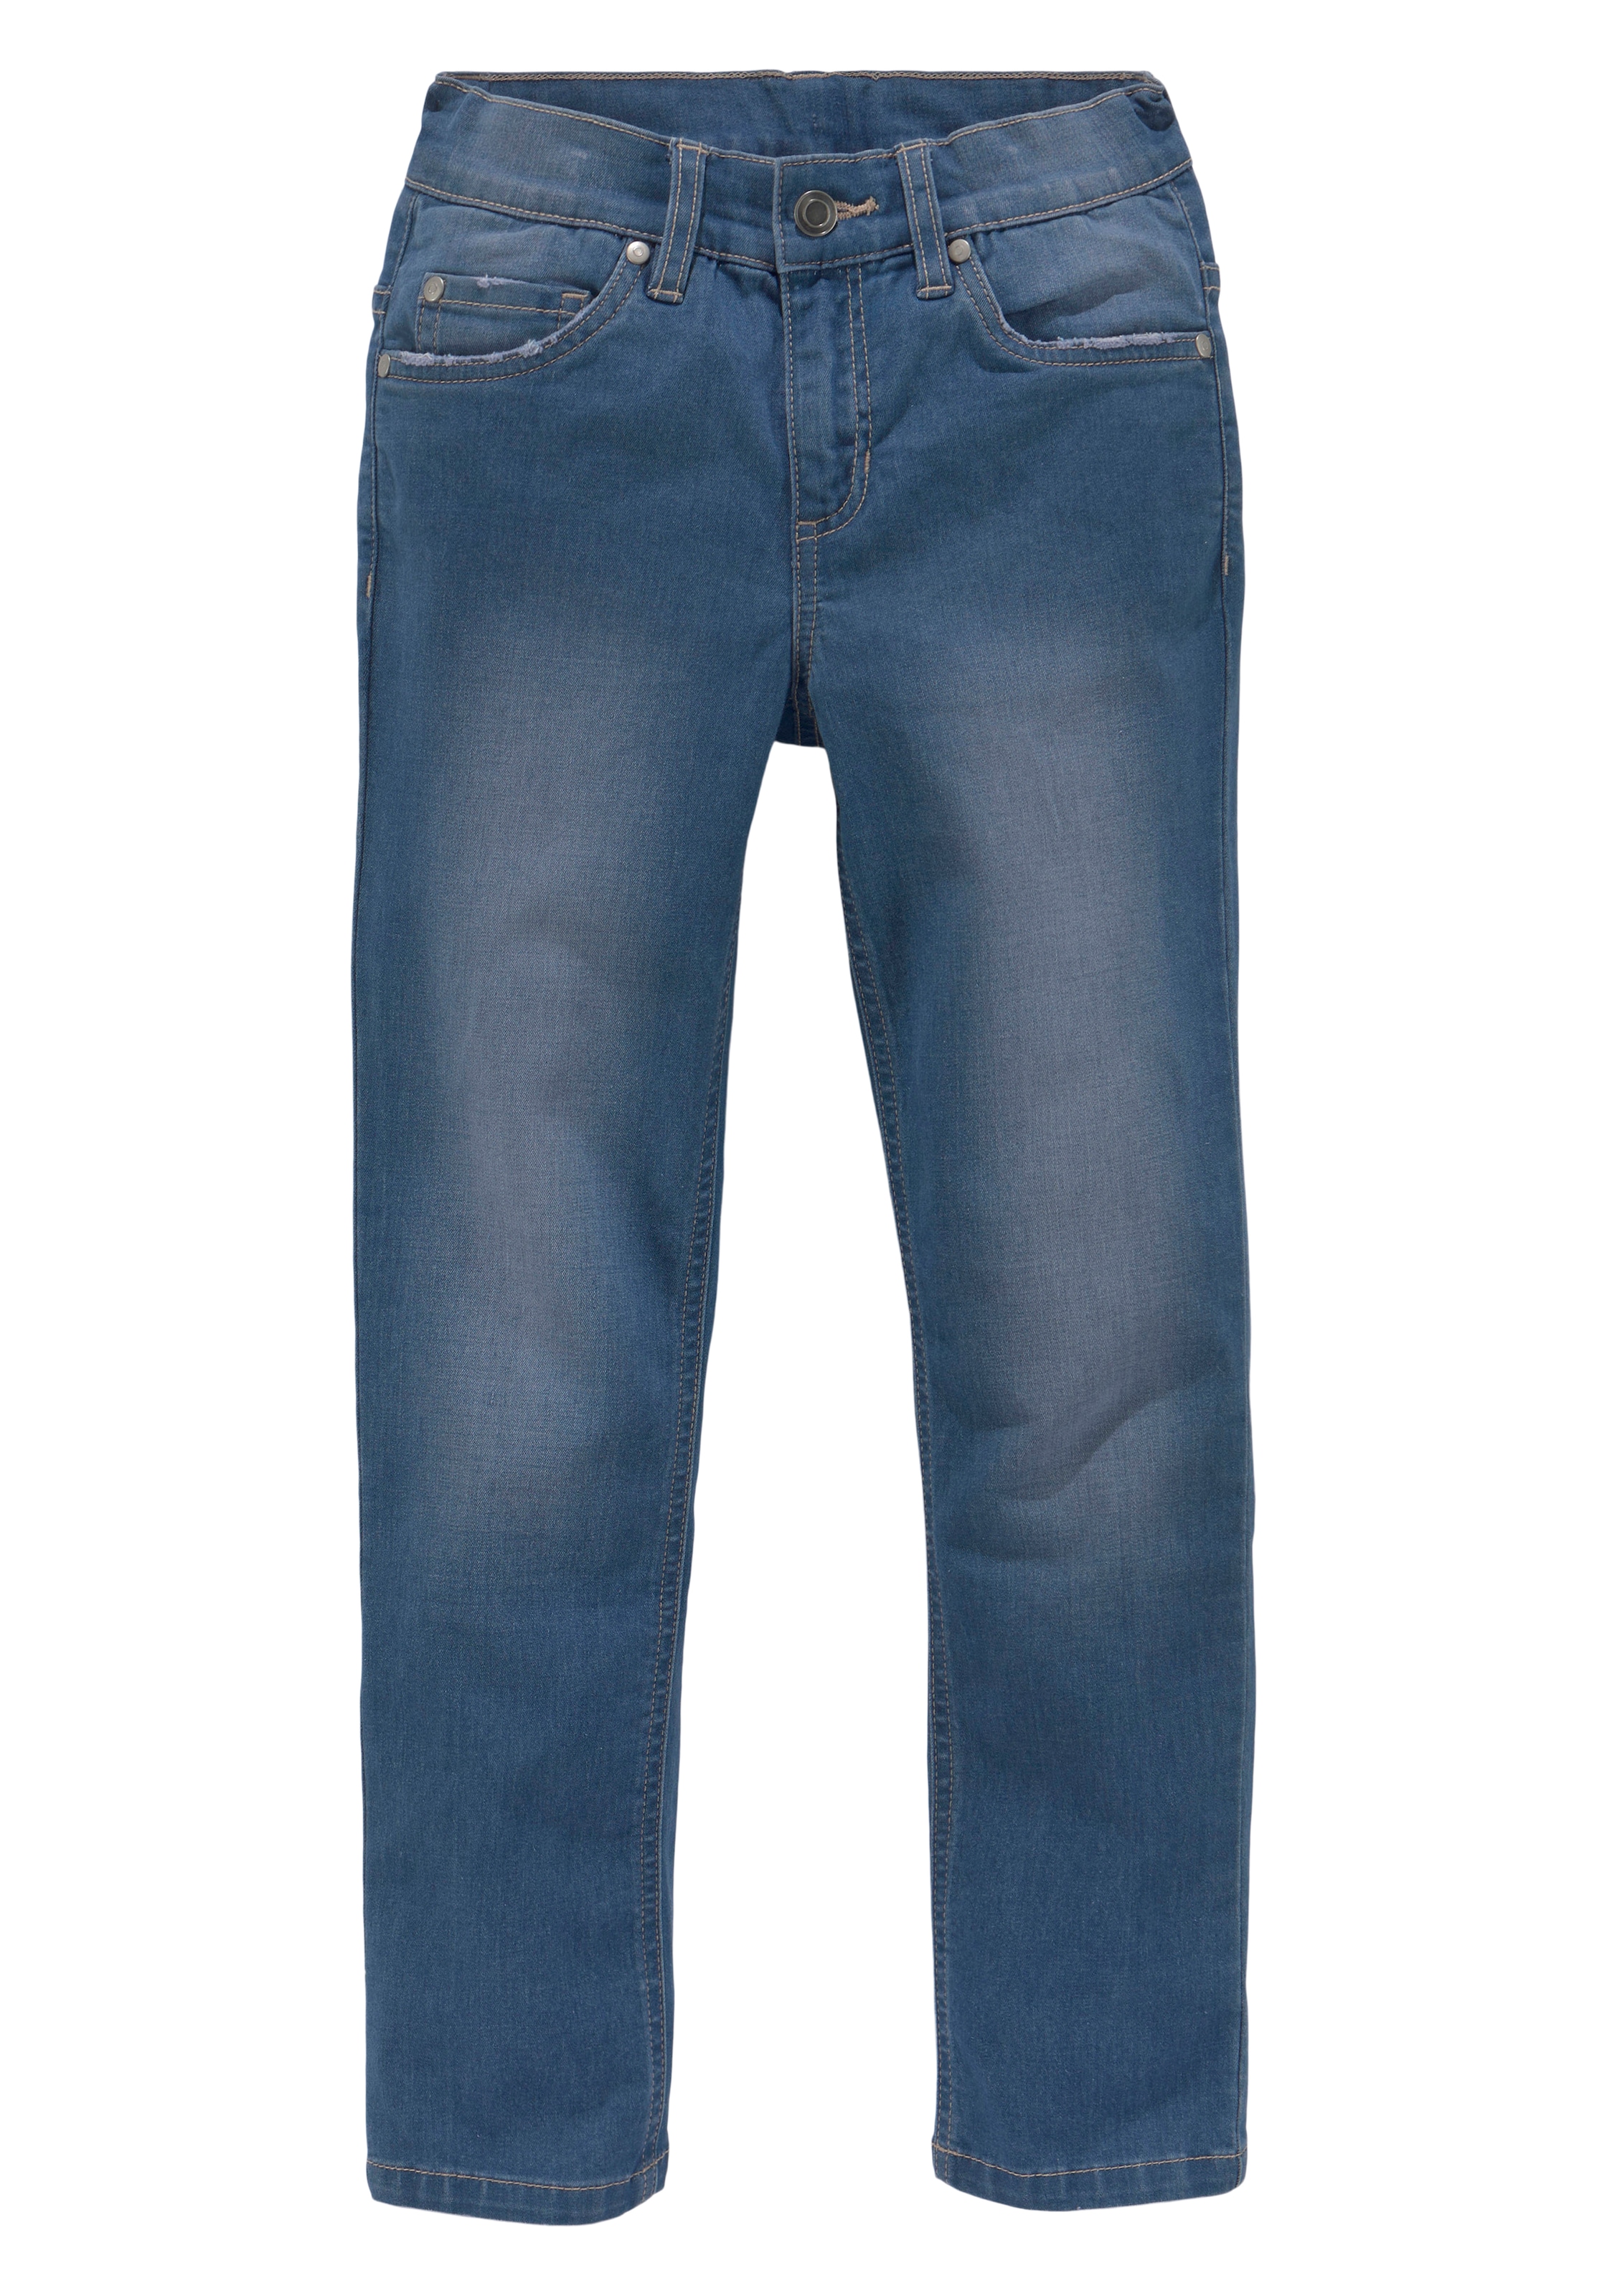 DELMAO Stretch-Jeans »für Jungen«, in bequemer Stretchqualität